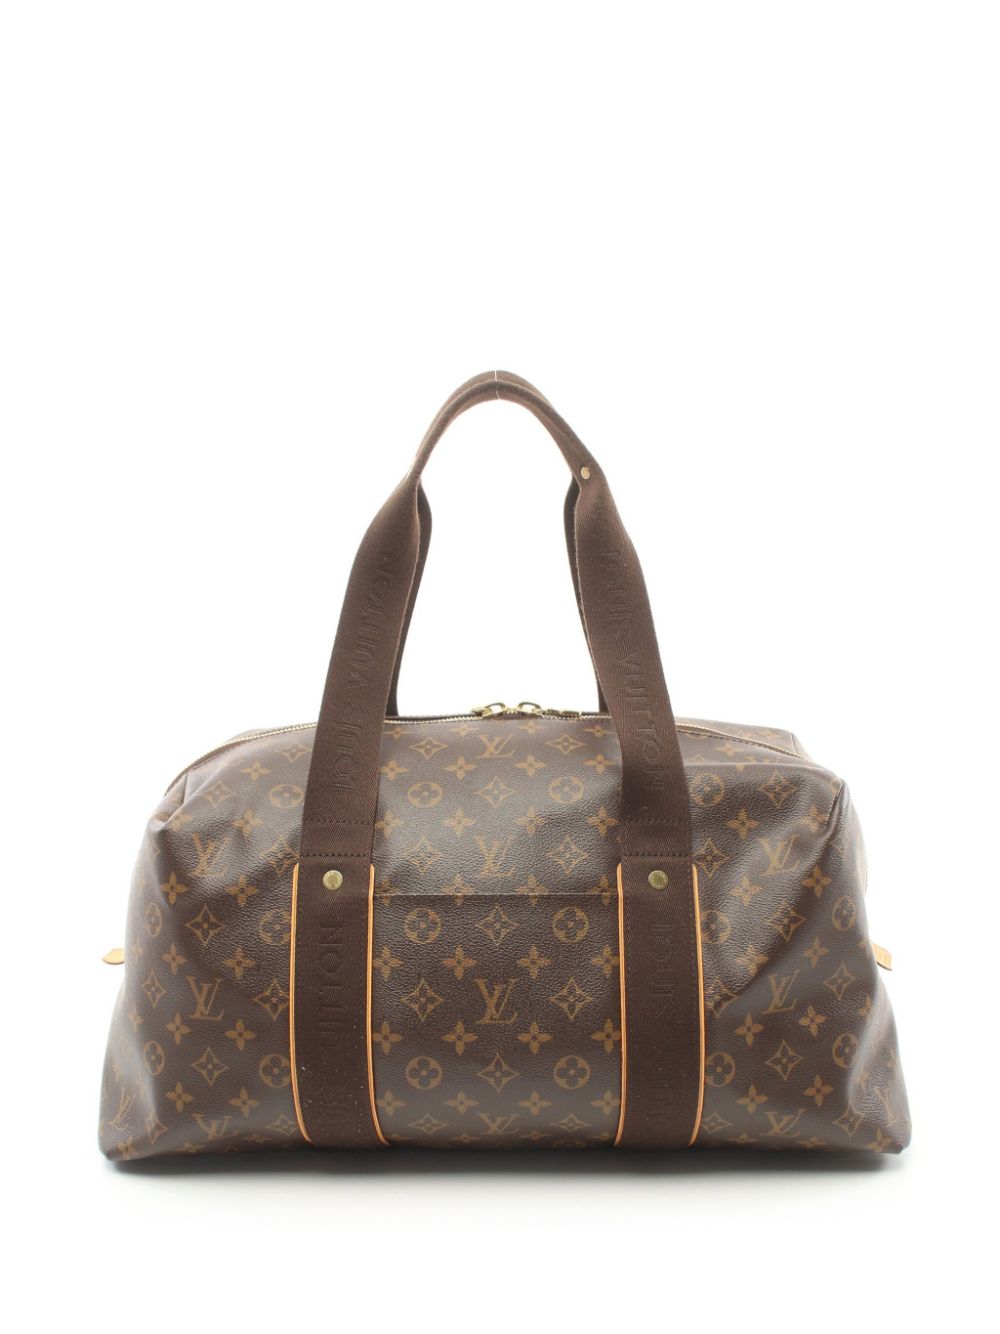 Pre-owned Louis Vuitton 2011 Weekender Mm Boston Handbag In Brown